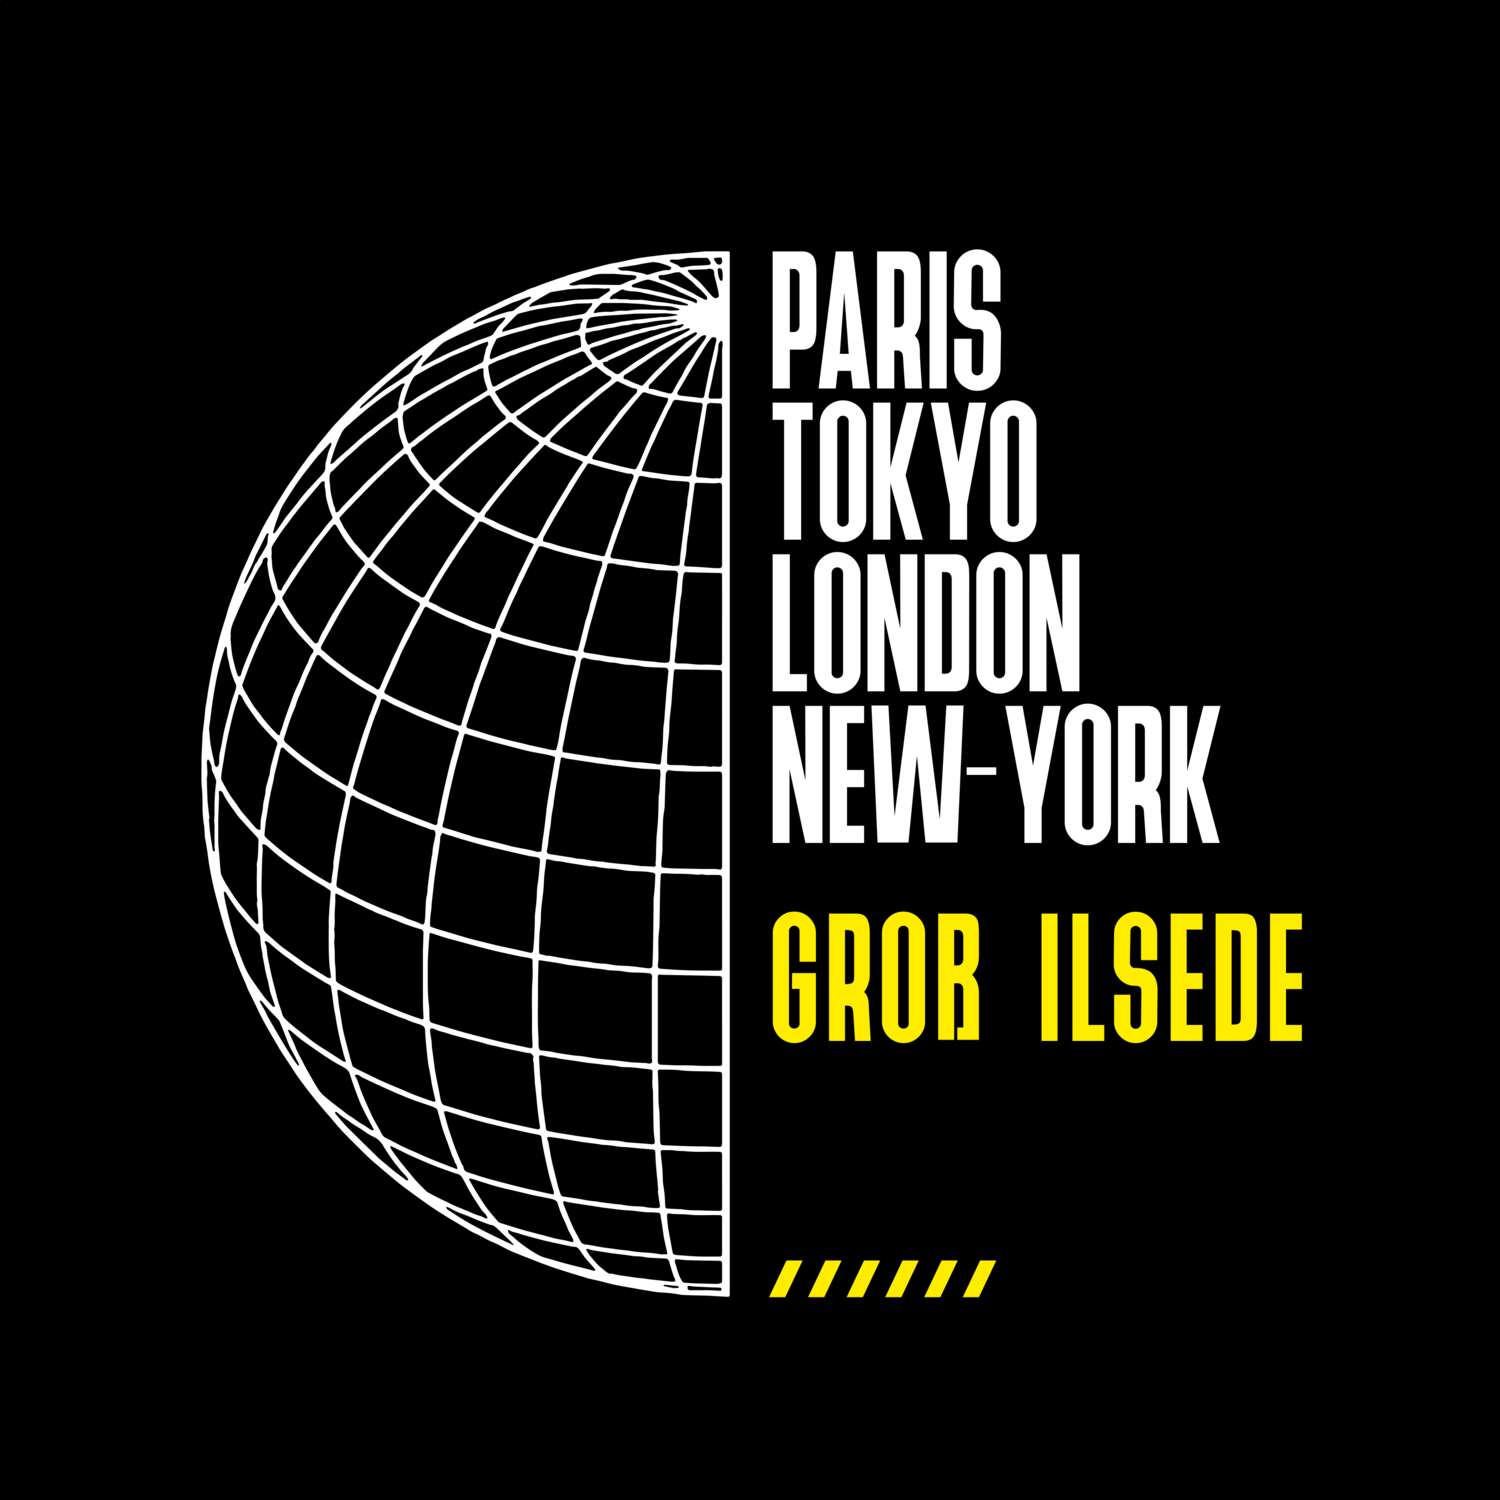 Groß Ilsede T-Shirt »Paris Tokyo London«